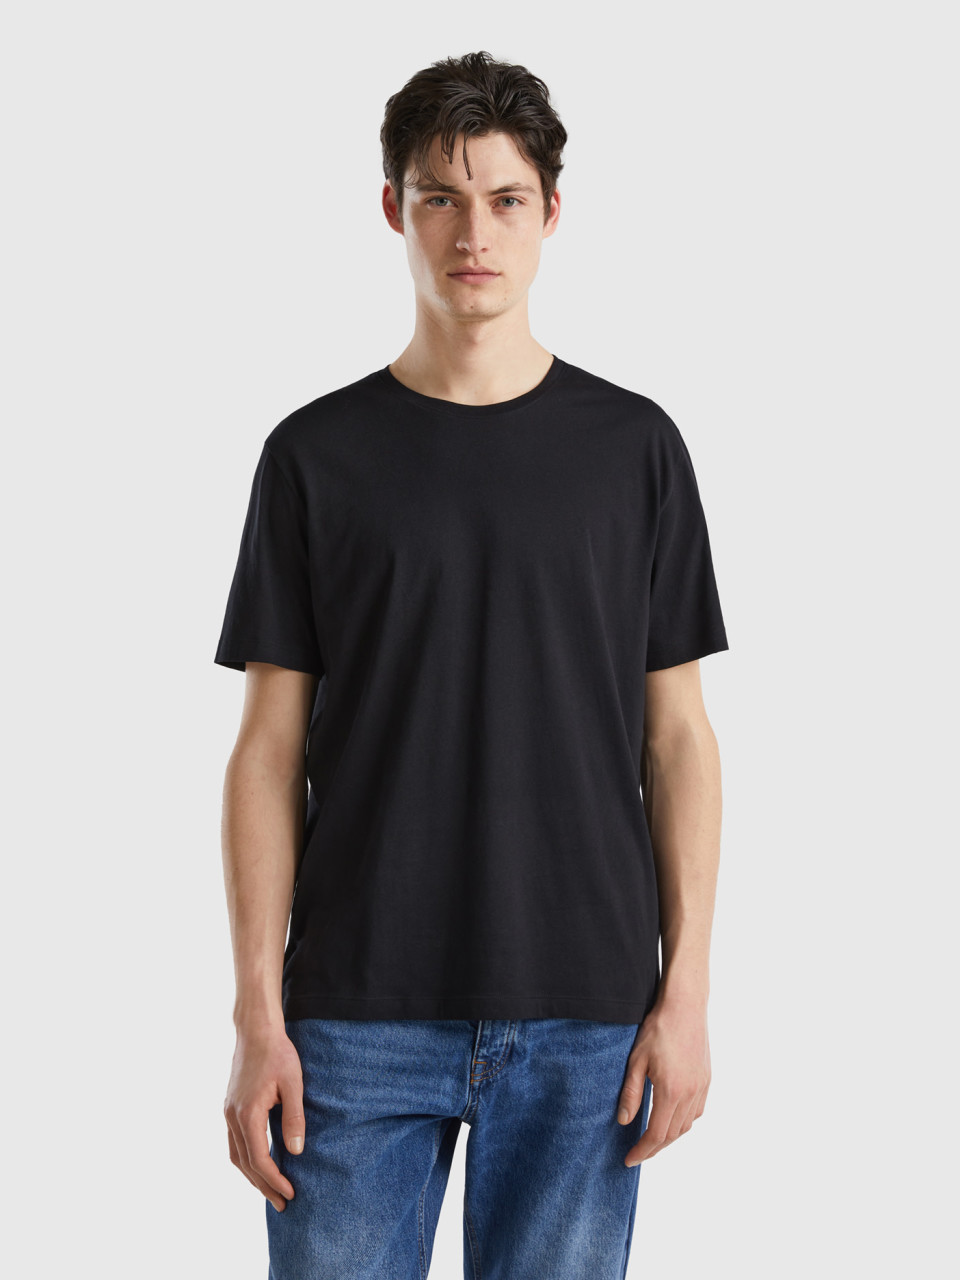 Benetton, Camiseta De Punto Fino, Negro, Hombre